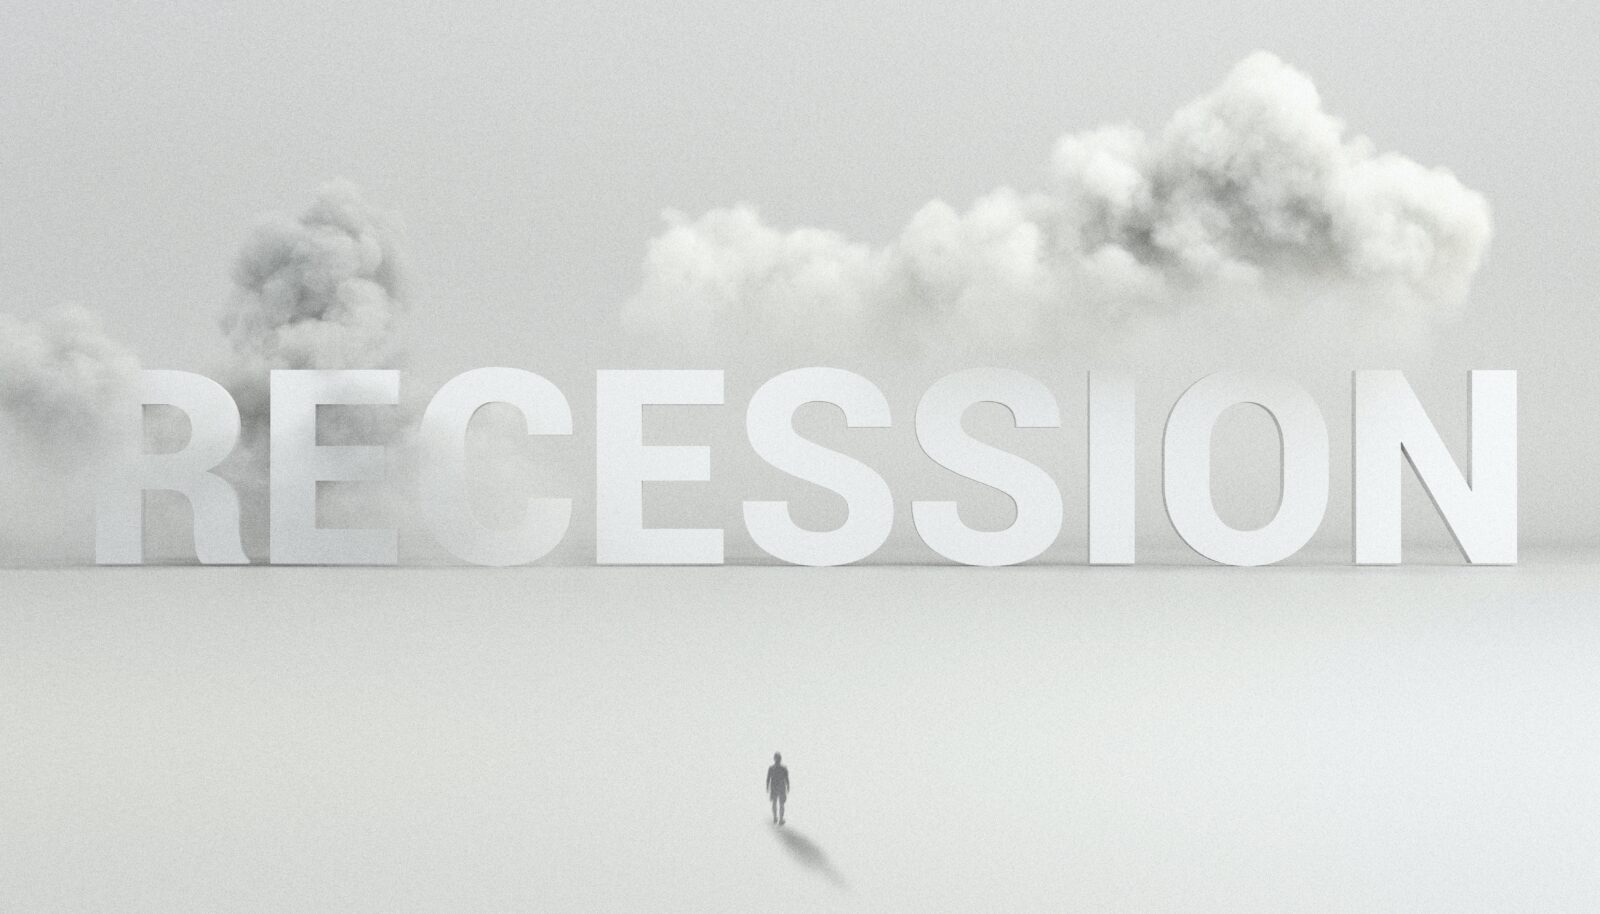 Die Rezession kommt: Zukunftssicher mit deinem Unternehmen agieren